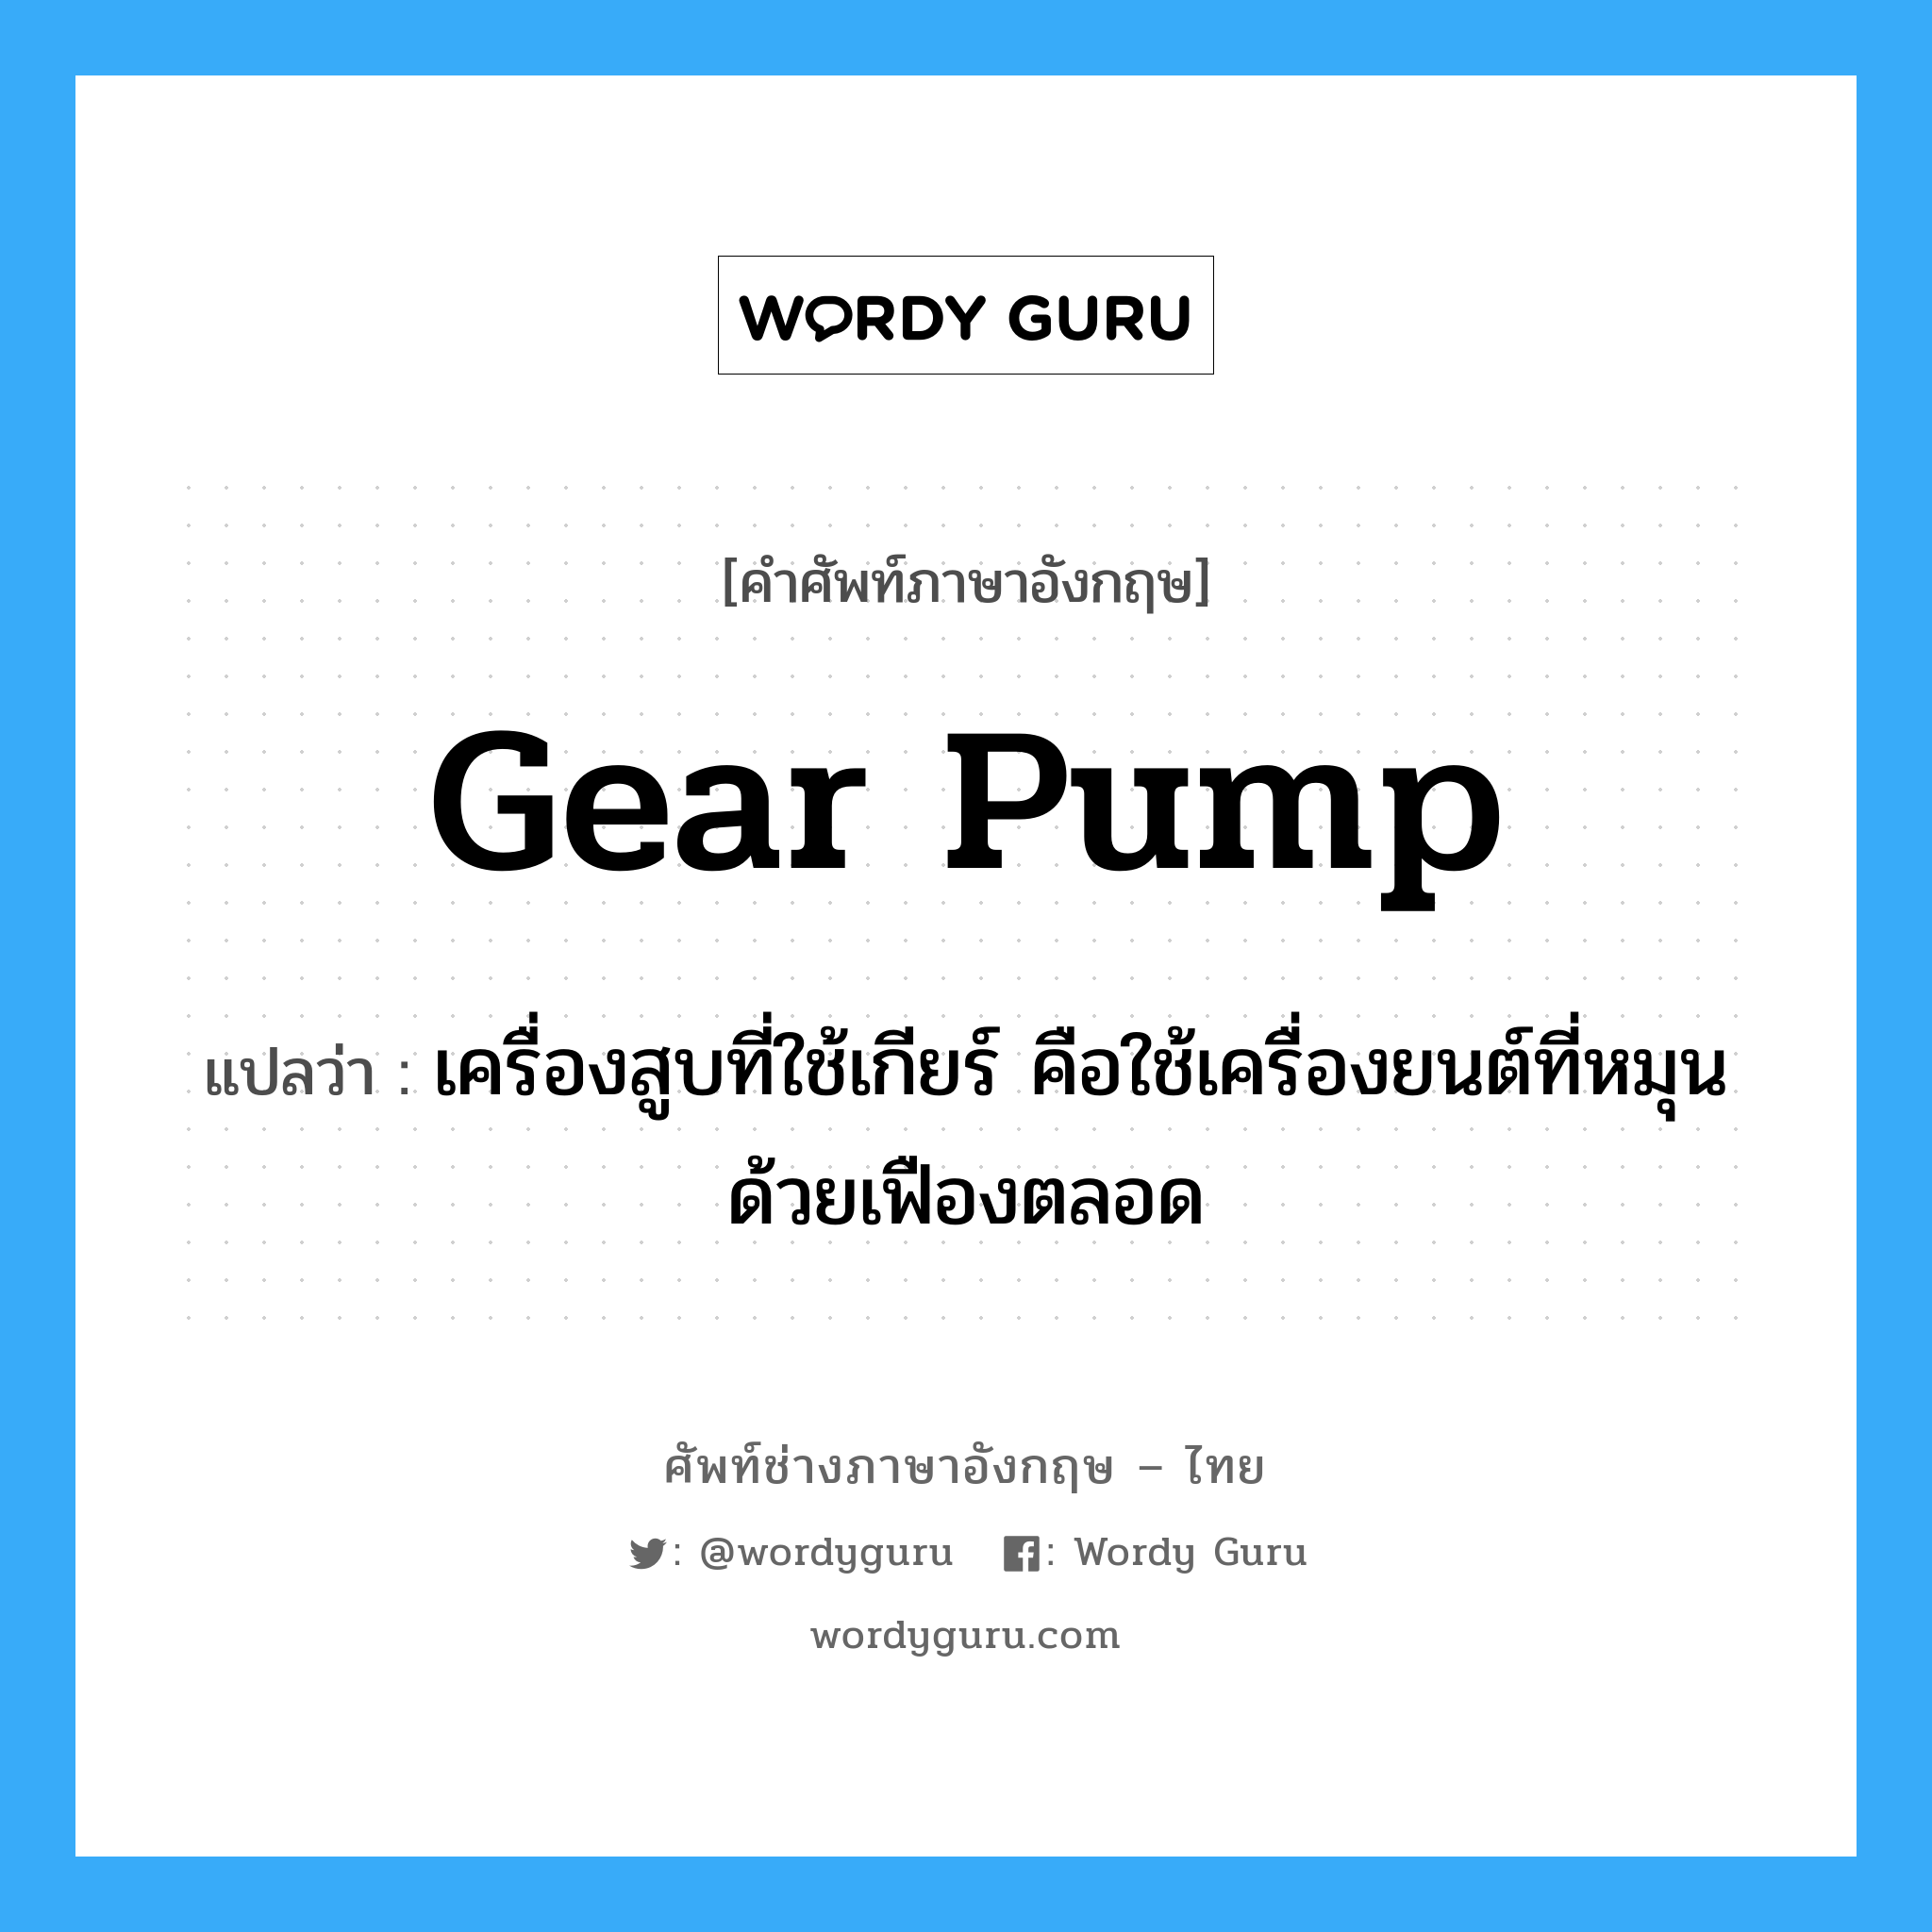 gear pump แปลว่า?, คำศัพท์ช่างภาษาอังกฤษ - ไทย gear pump คำศัพท์ภาษาอังกฤษ gear pump แปลว่า เครื่องสูบที่ใช้เกียร์ คือใช้เครื่องยนต์ที่หมุนด้วยเฟืองตลอด